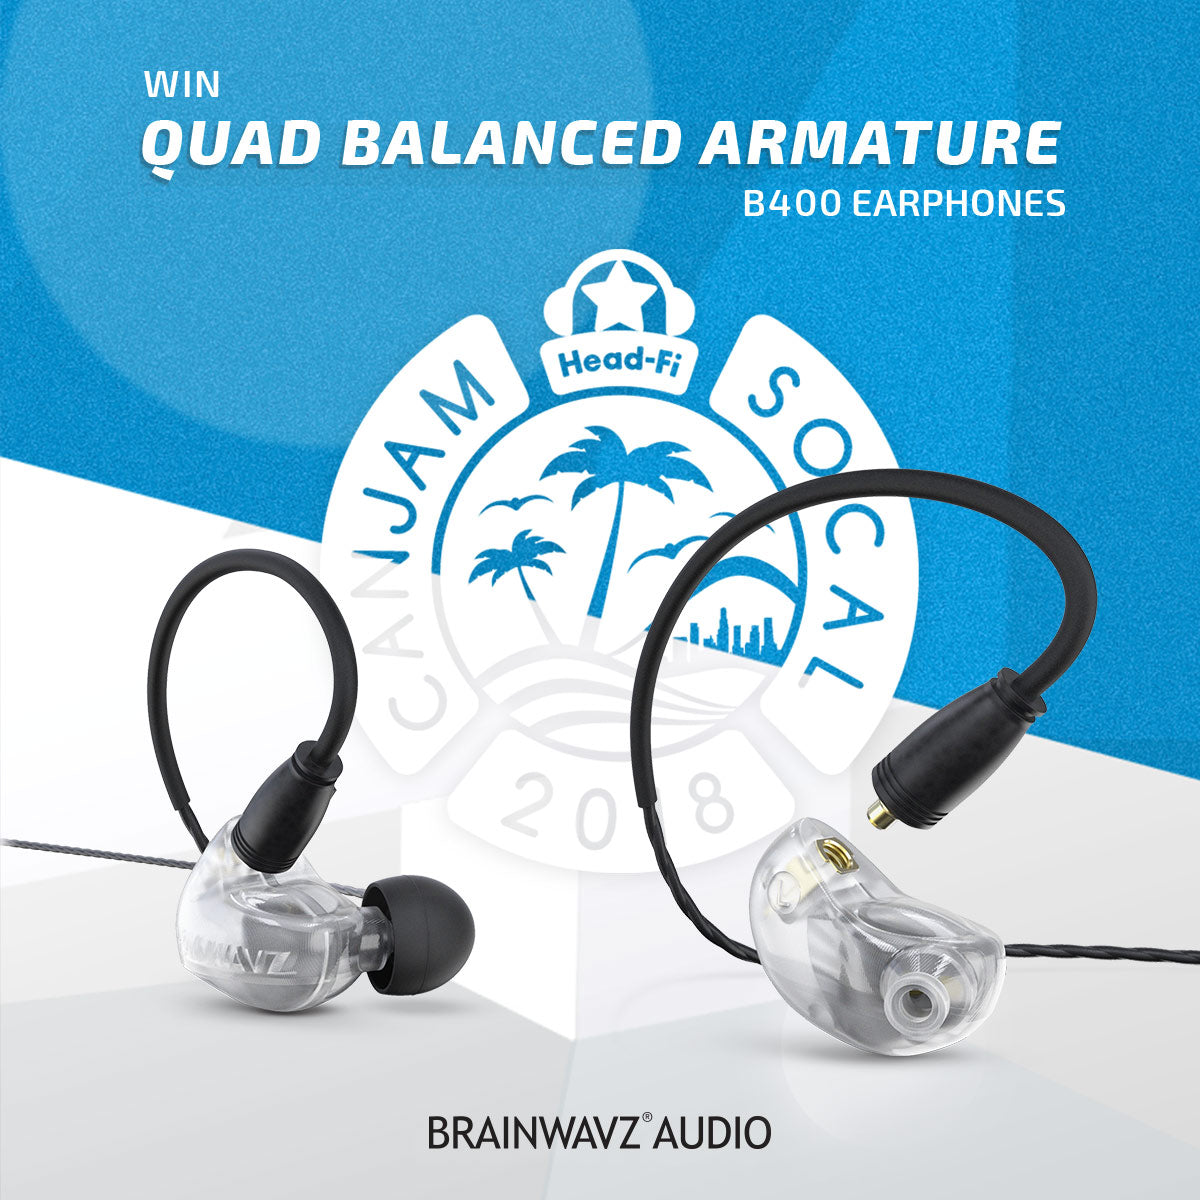 Win B400 earphone from Brainwavz at CANJAM SoCAL